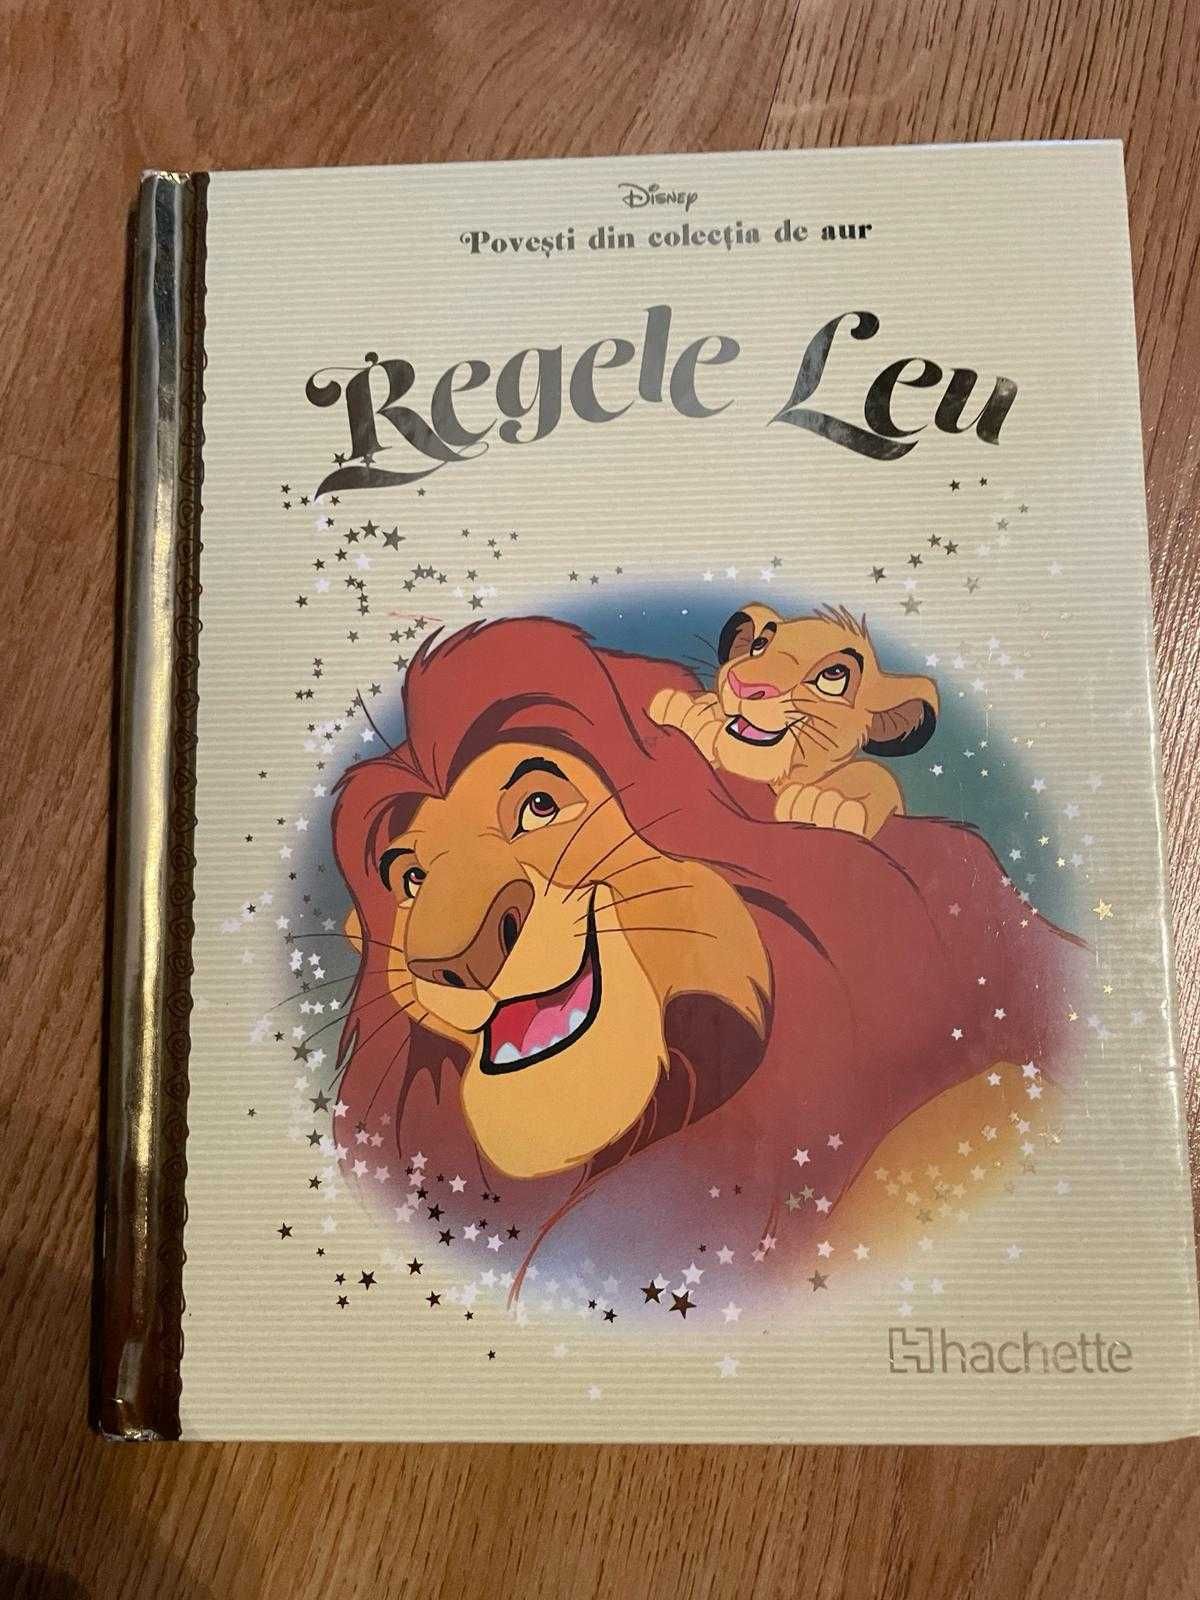 Regele Leu - Povesti din colectia de aur Disney